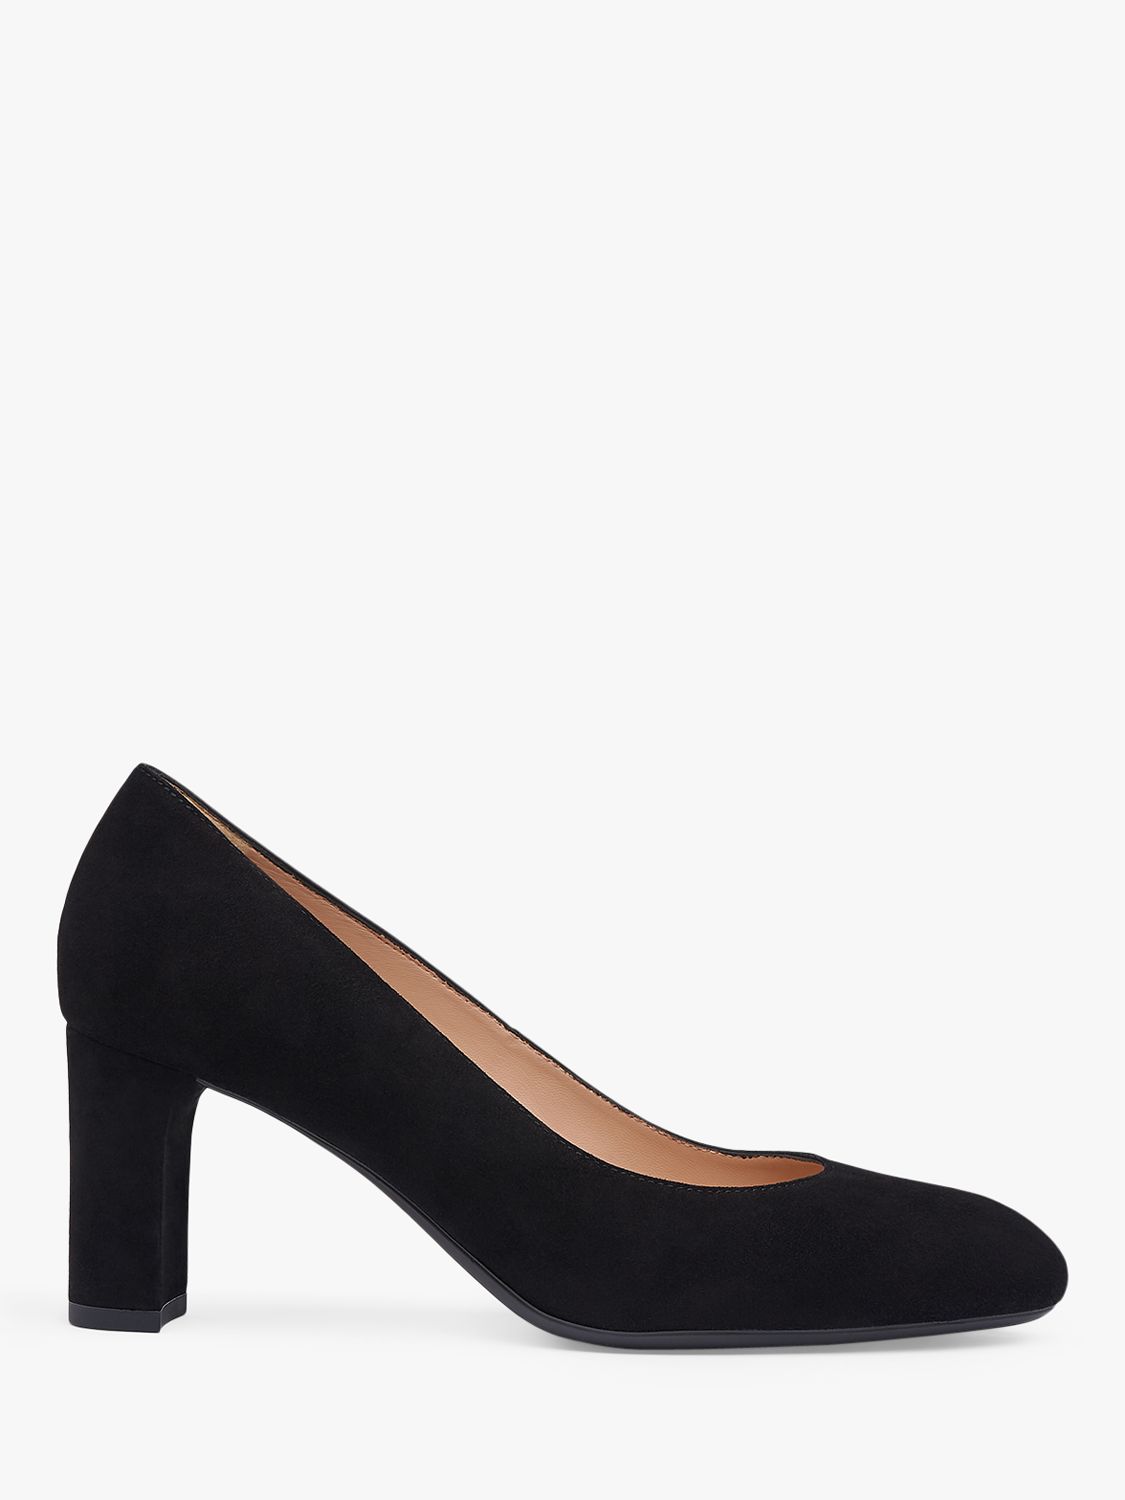 L.K.Bennett Winola Suede Court Shoes, Black, 2